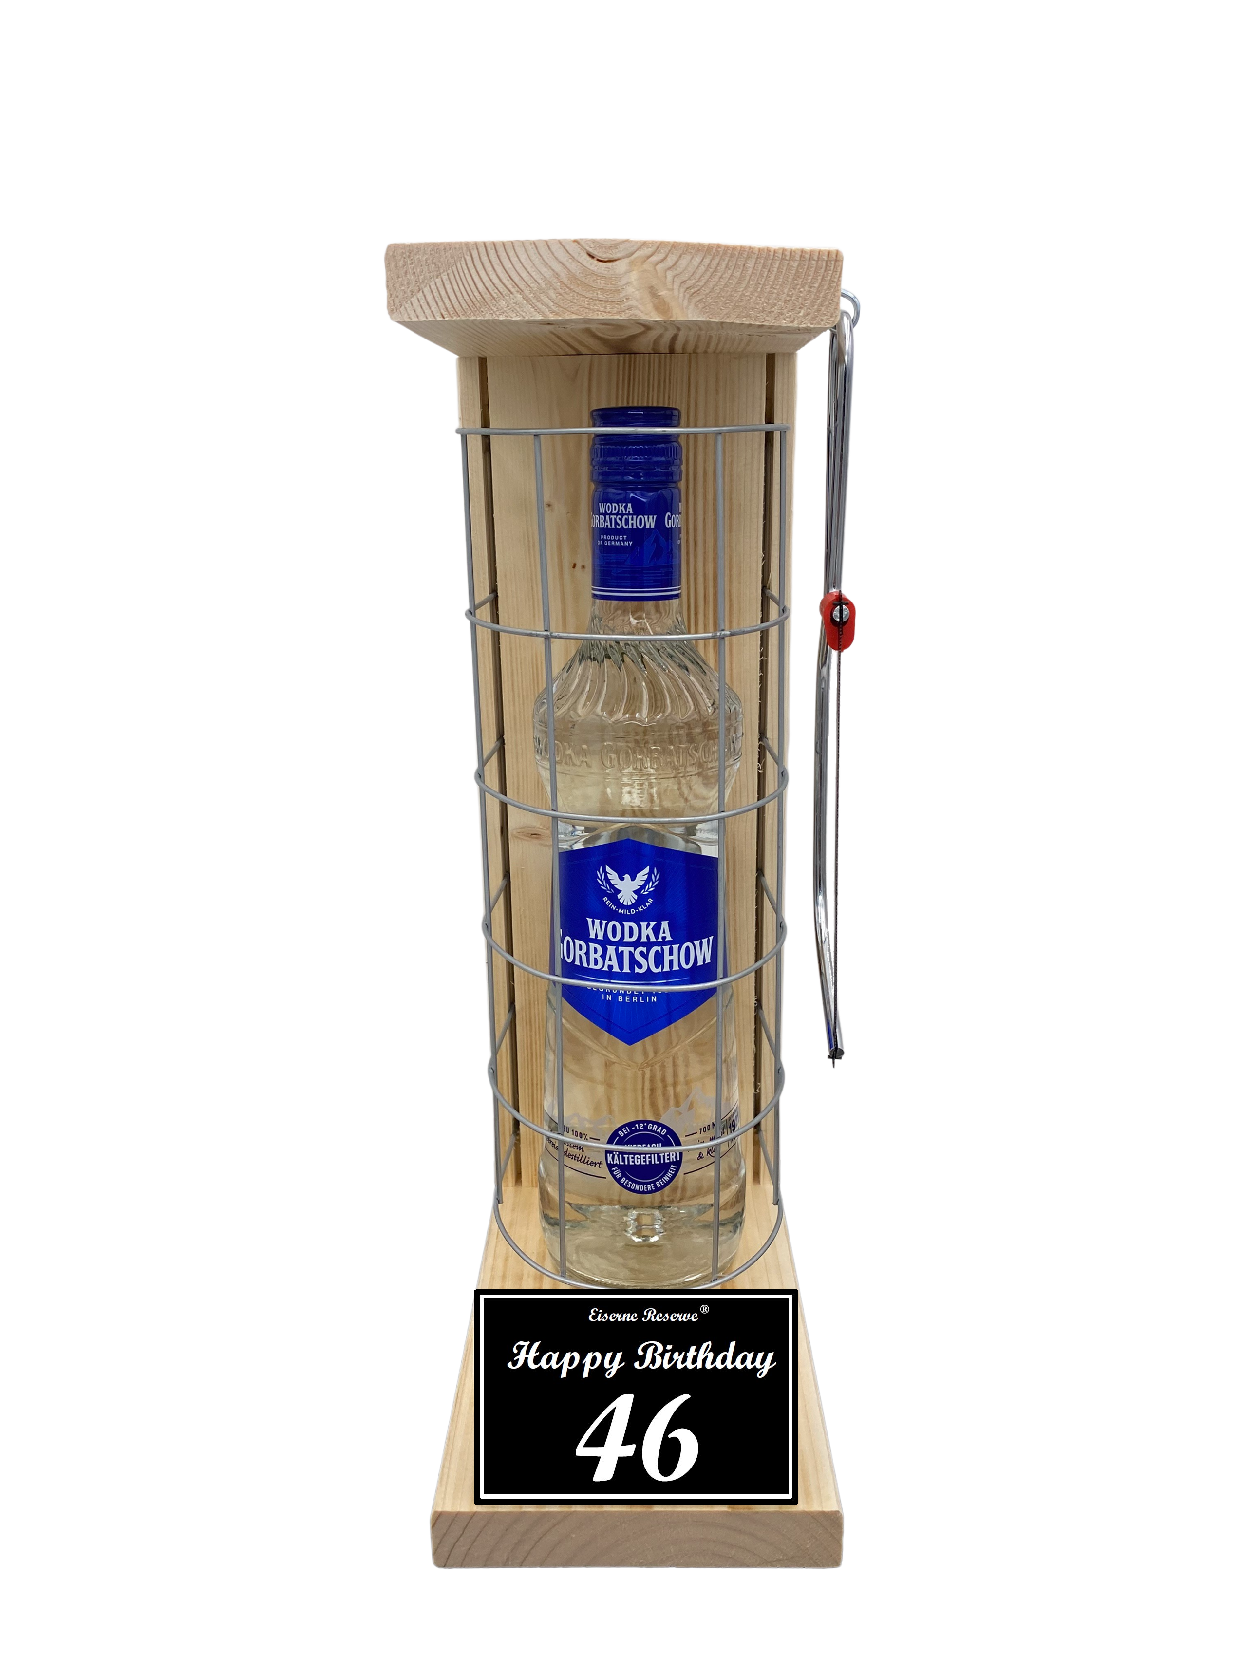 Wodka Geschenk zum 46 Geburtstag - Eiserne Reserve Gitterkäfig